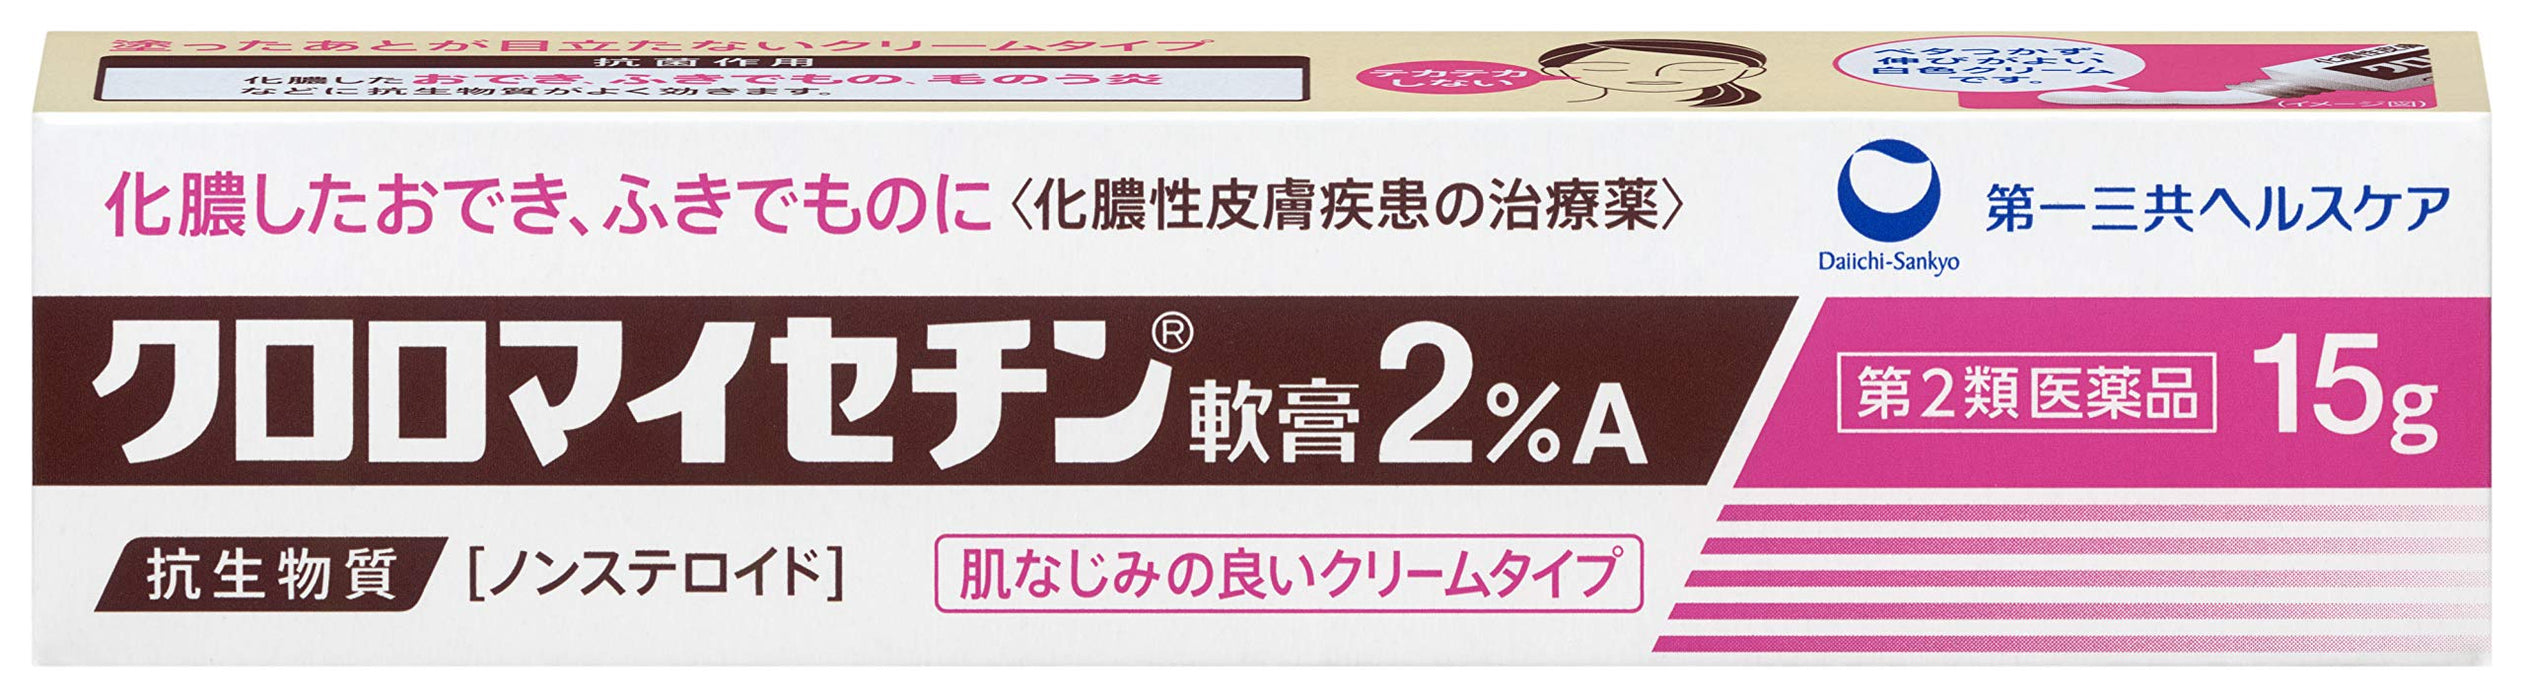 Kuromai 氯黴素軟膏 2%A 15G 日本 - 2 種藥物